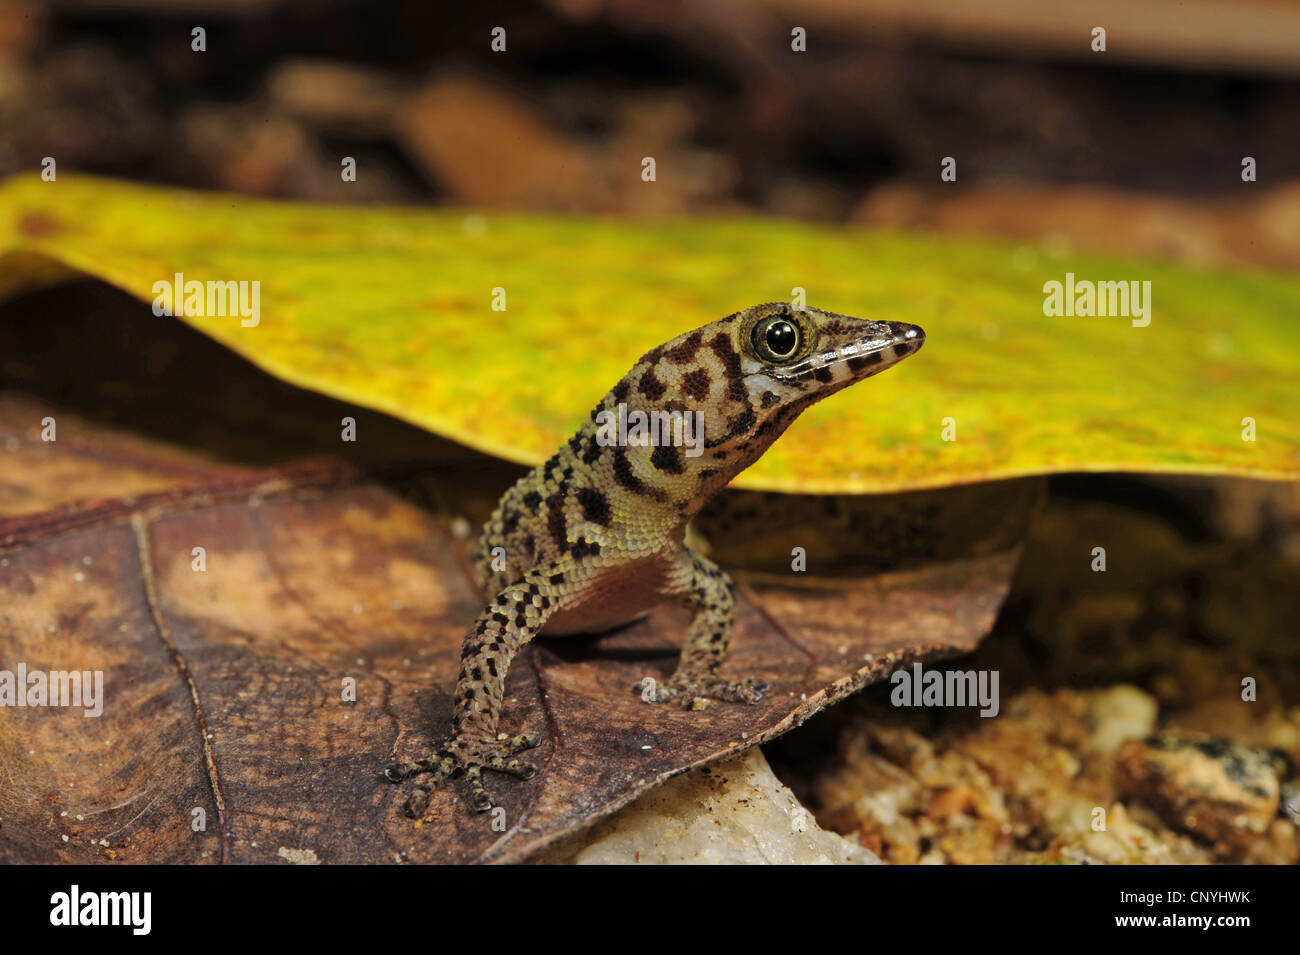 Bay Island Least Gecko, Bay Island dwarf gecko (Sphaerodactylus rosaurae), sitting on a leaf, Honduras, Roatan, Bay Islands Stock Photo